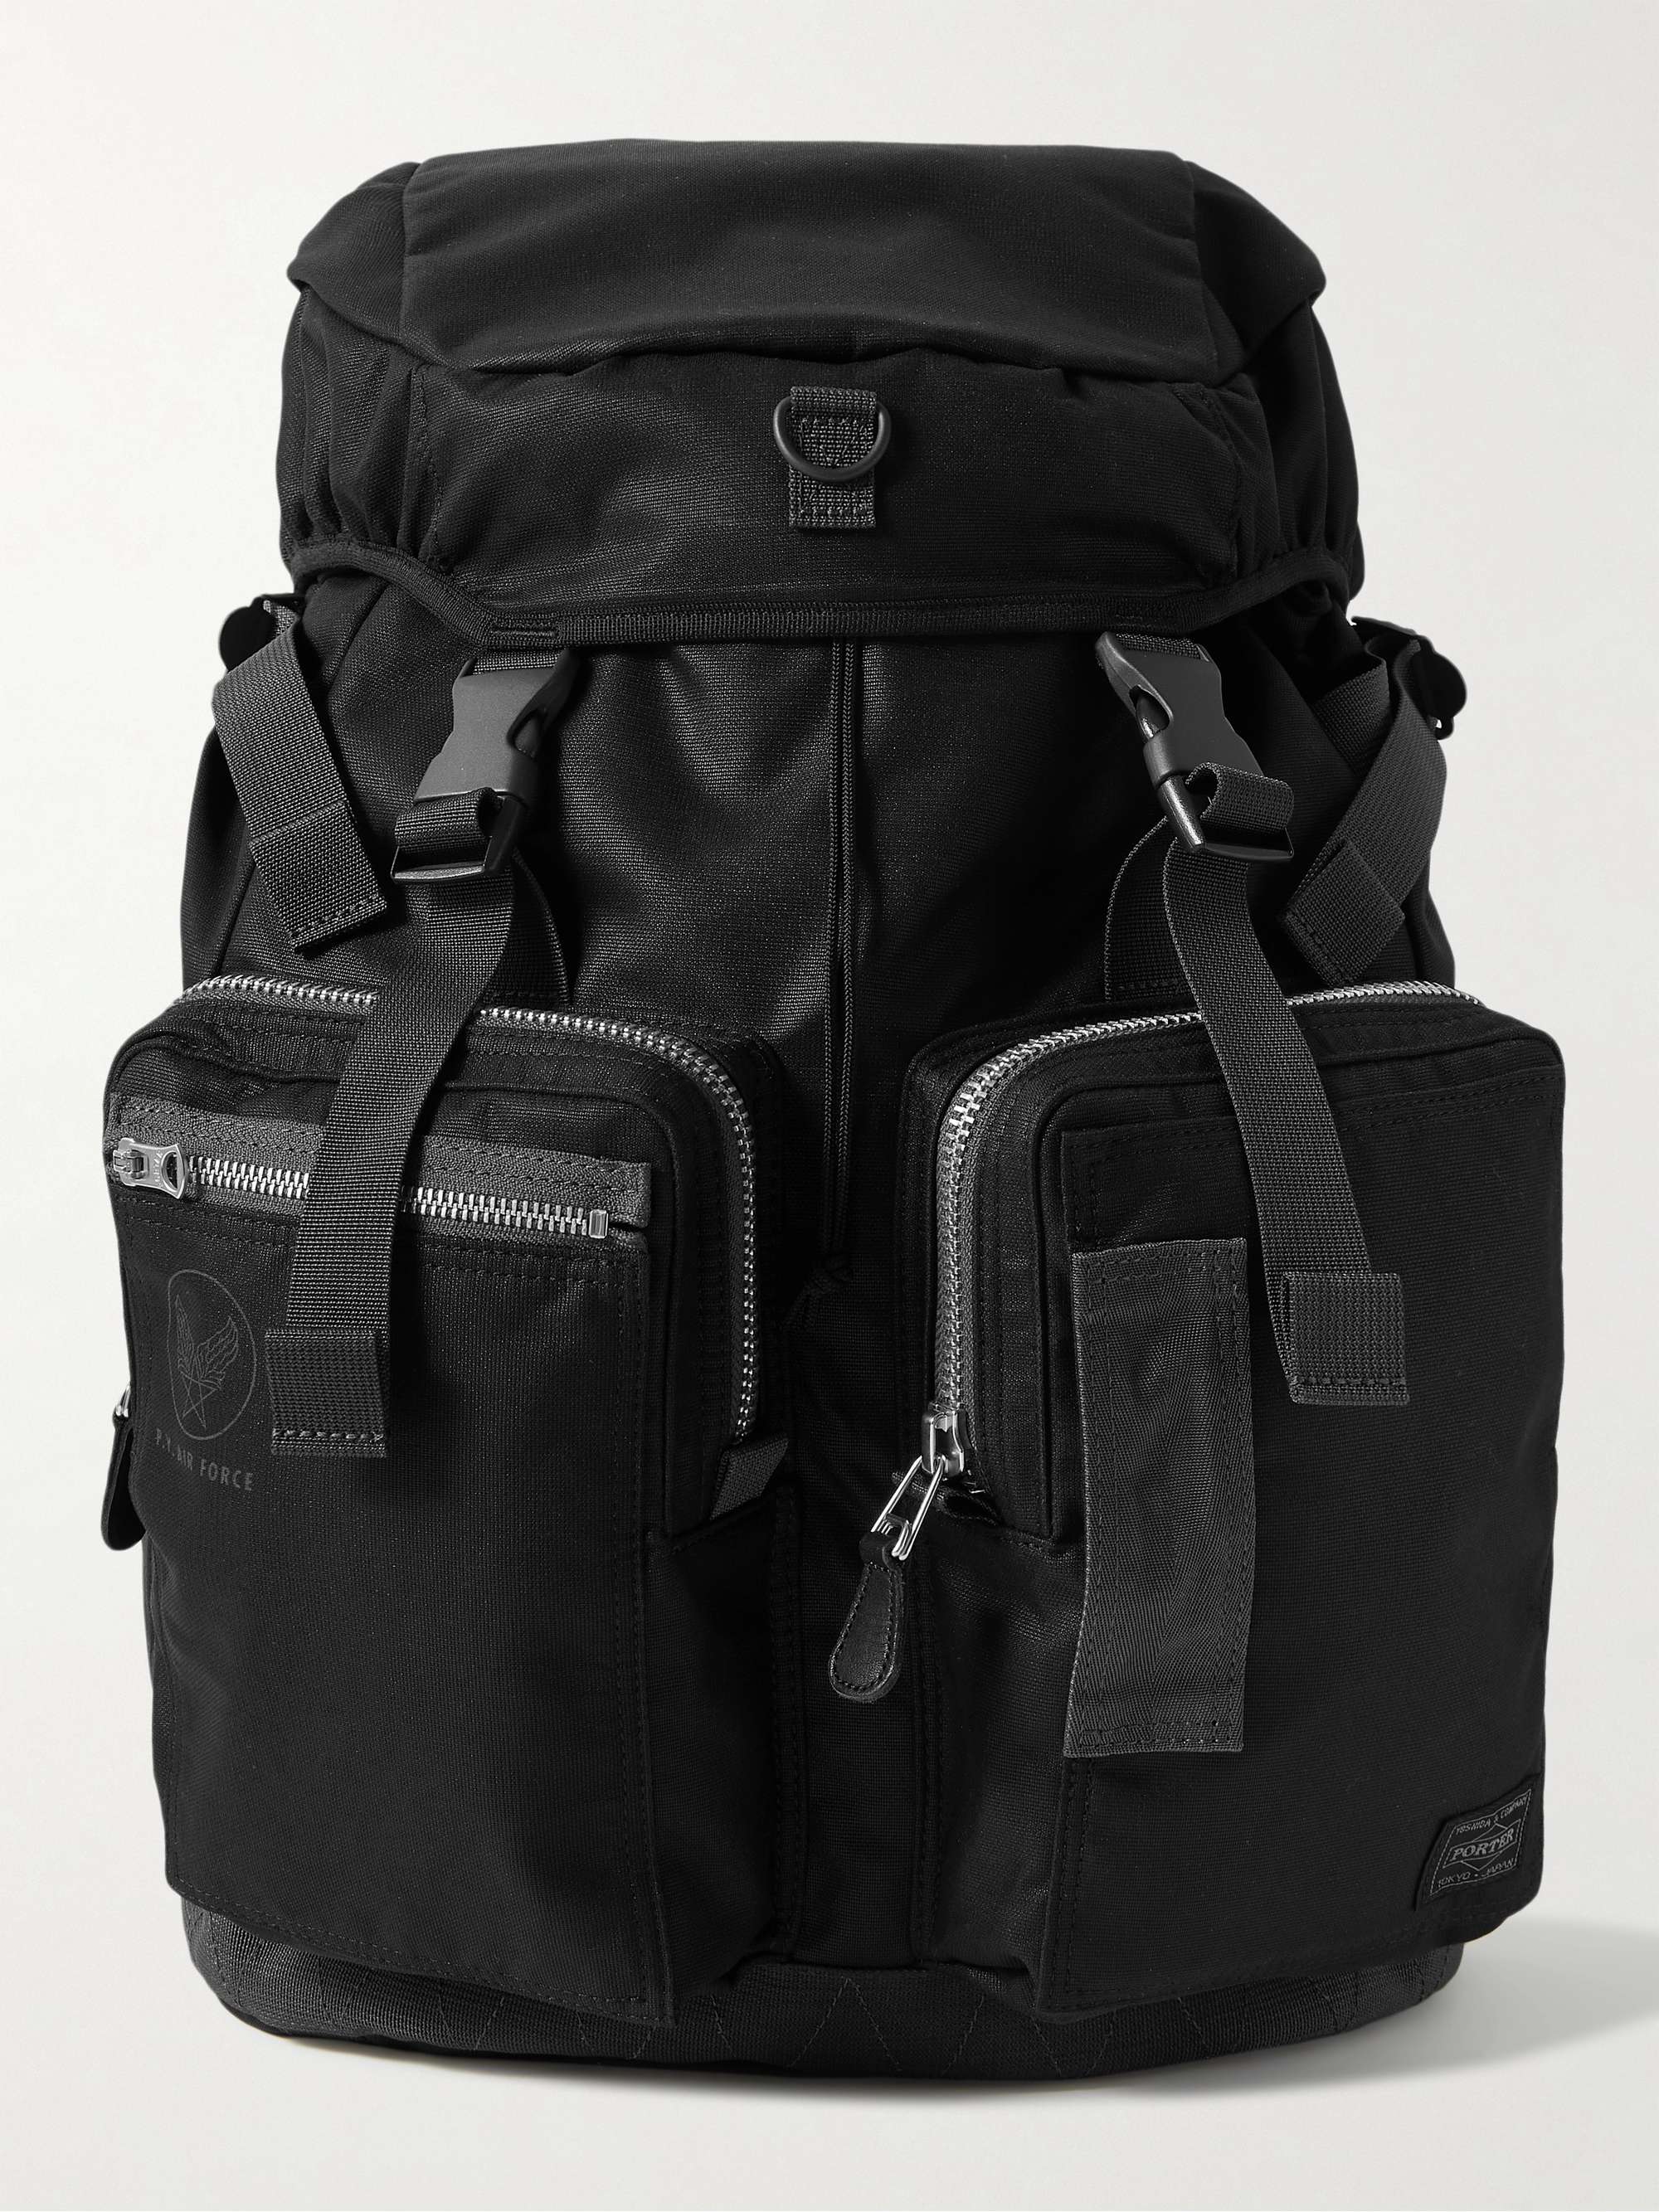 Black Essential U Logo-Flocked Nylon Backpack | GIVENCHY | MR PORTER